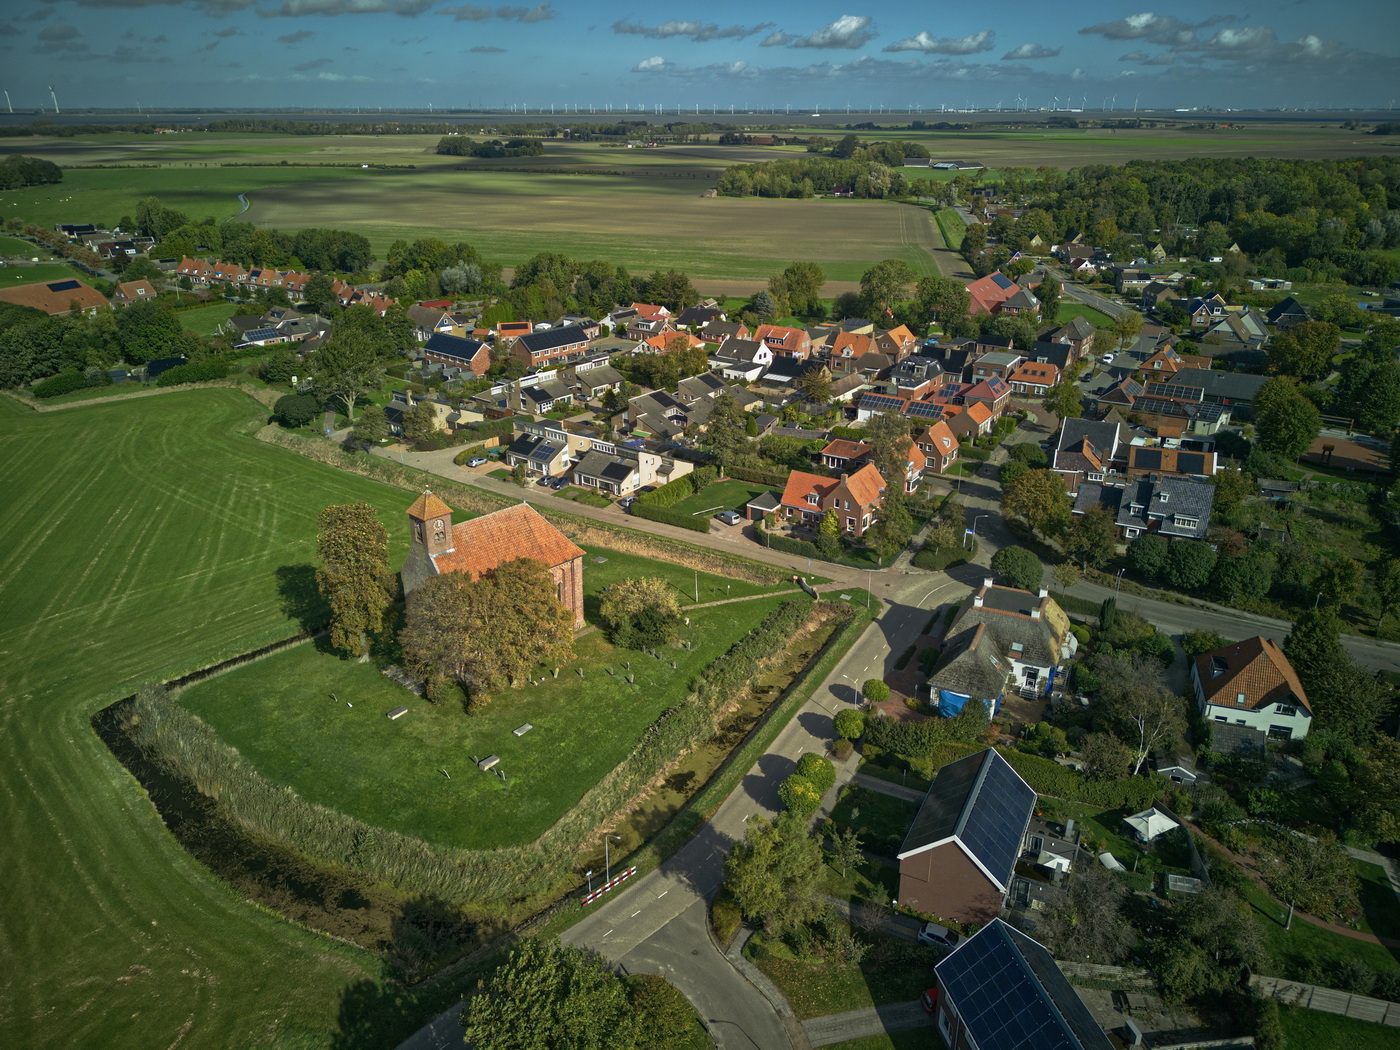 

Luchtfoto van Woldendorp met op de voorgrond de hervormde kerk. Foto: ©Jur Kuipers